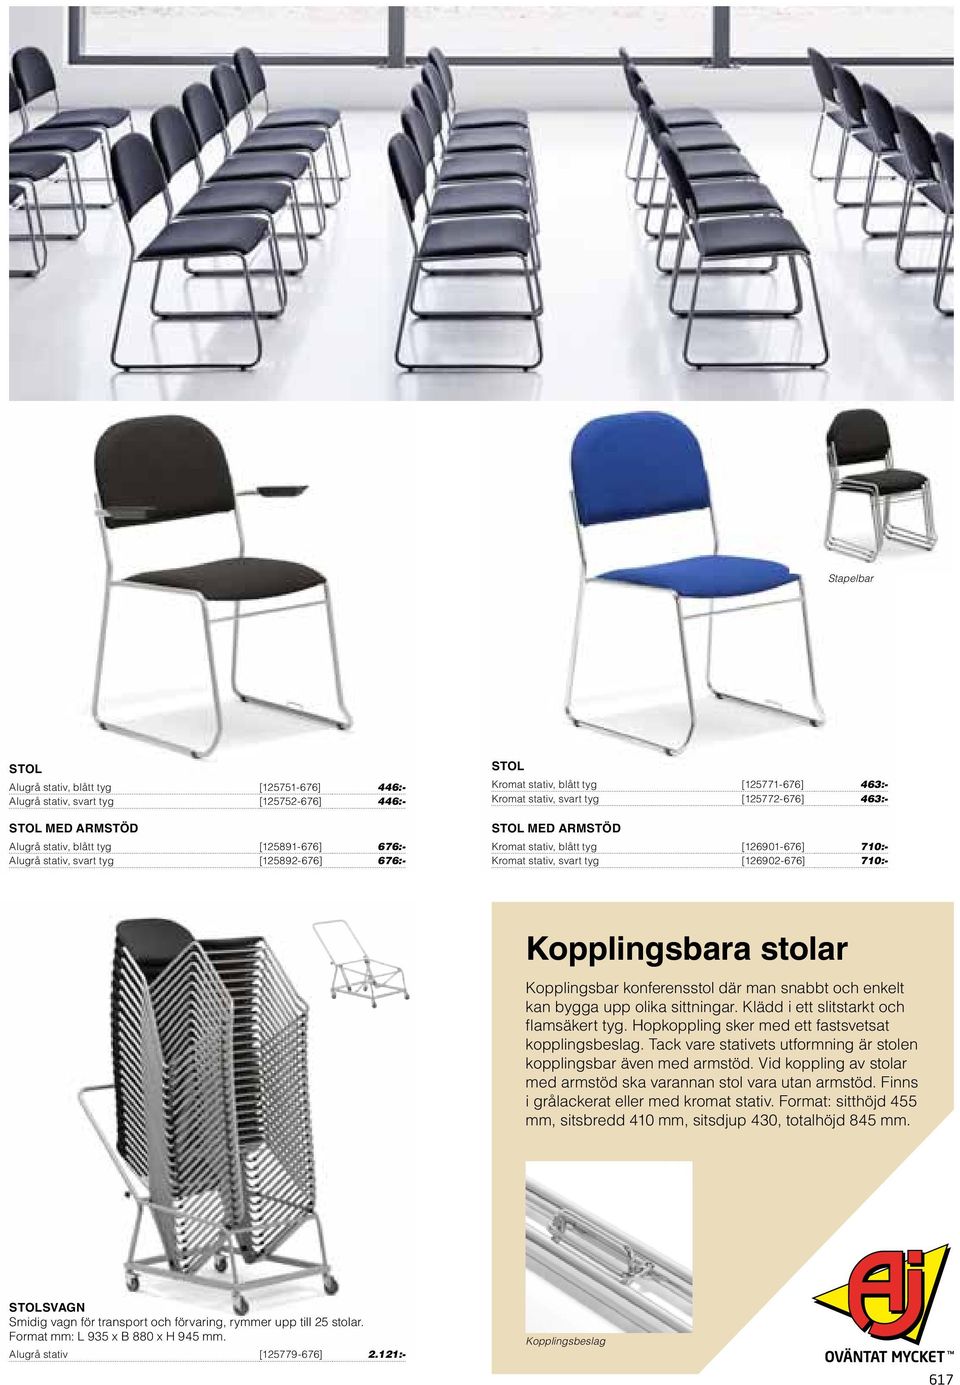 [126902-676] 710:- Kopplingsbara stolar Kopplingsbar konferensstol där man snabbt och enkelt kan bygga upp olika sittningar. Klädd i ett slitstarkt och flamsäkert tyg.